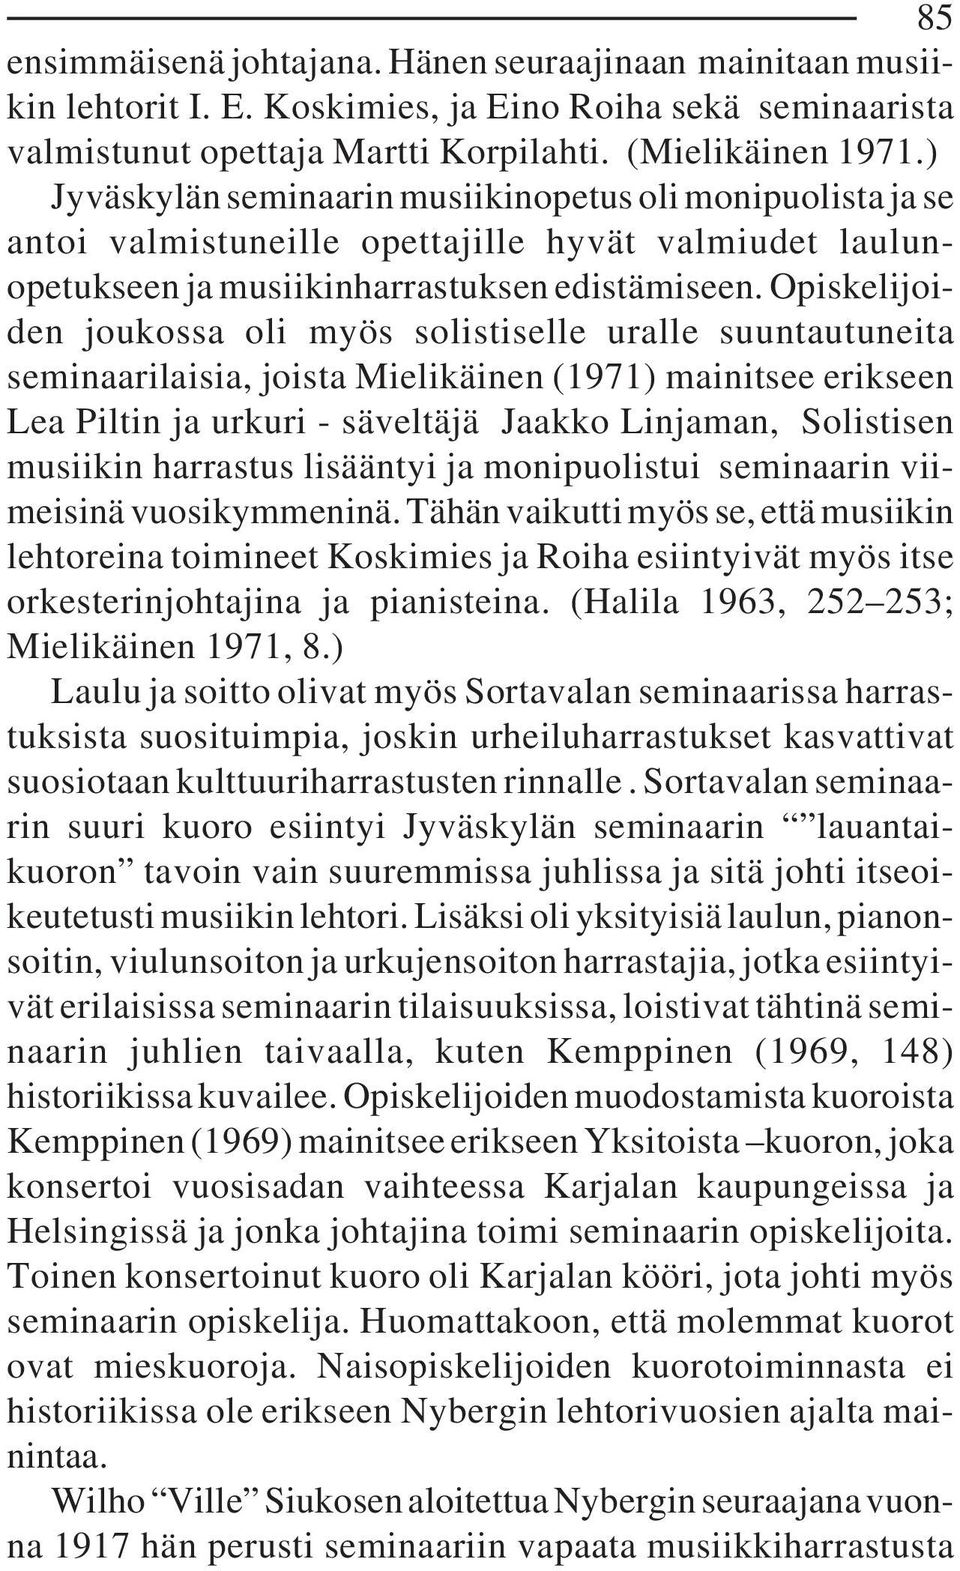 Opiskelijoiden joukossa oli myös solistiselle uralle suuntautuneita seminaarilaisia, joista Mielikäinen (1971) mainitsee erikseen Lea Piltin ja urkuri - säveltäjä Jaakko Linjaman, Solistisen musiikin